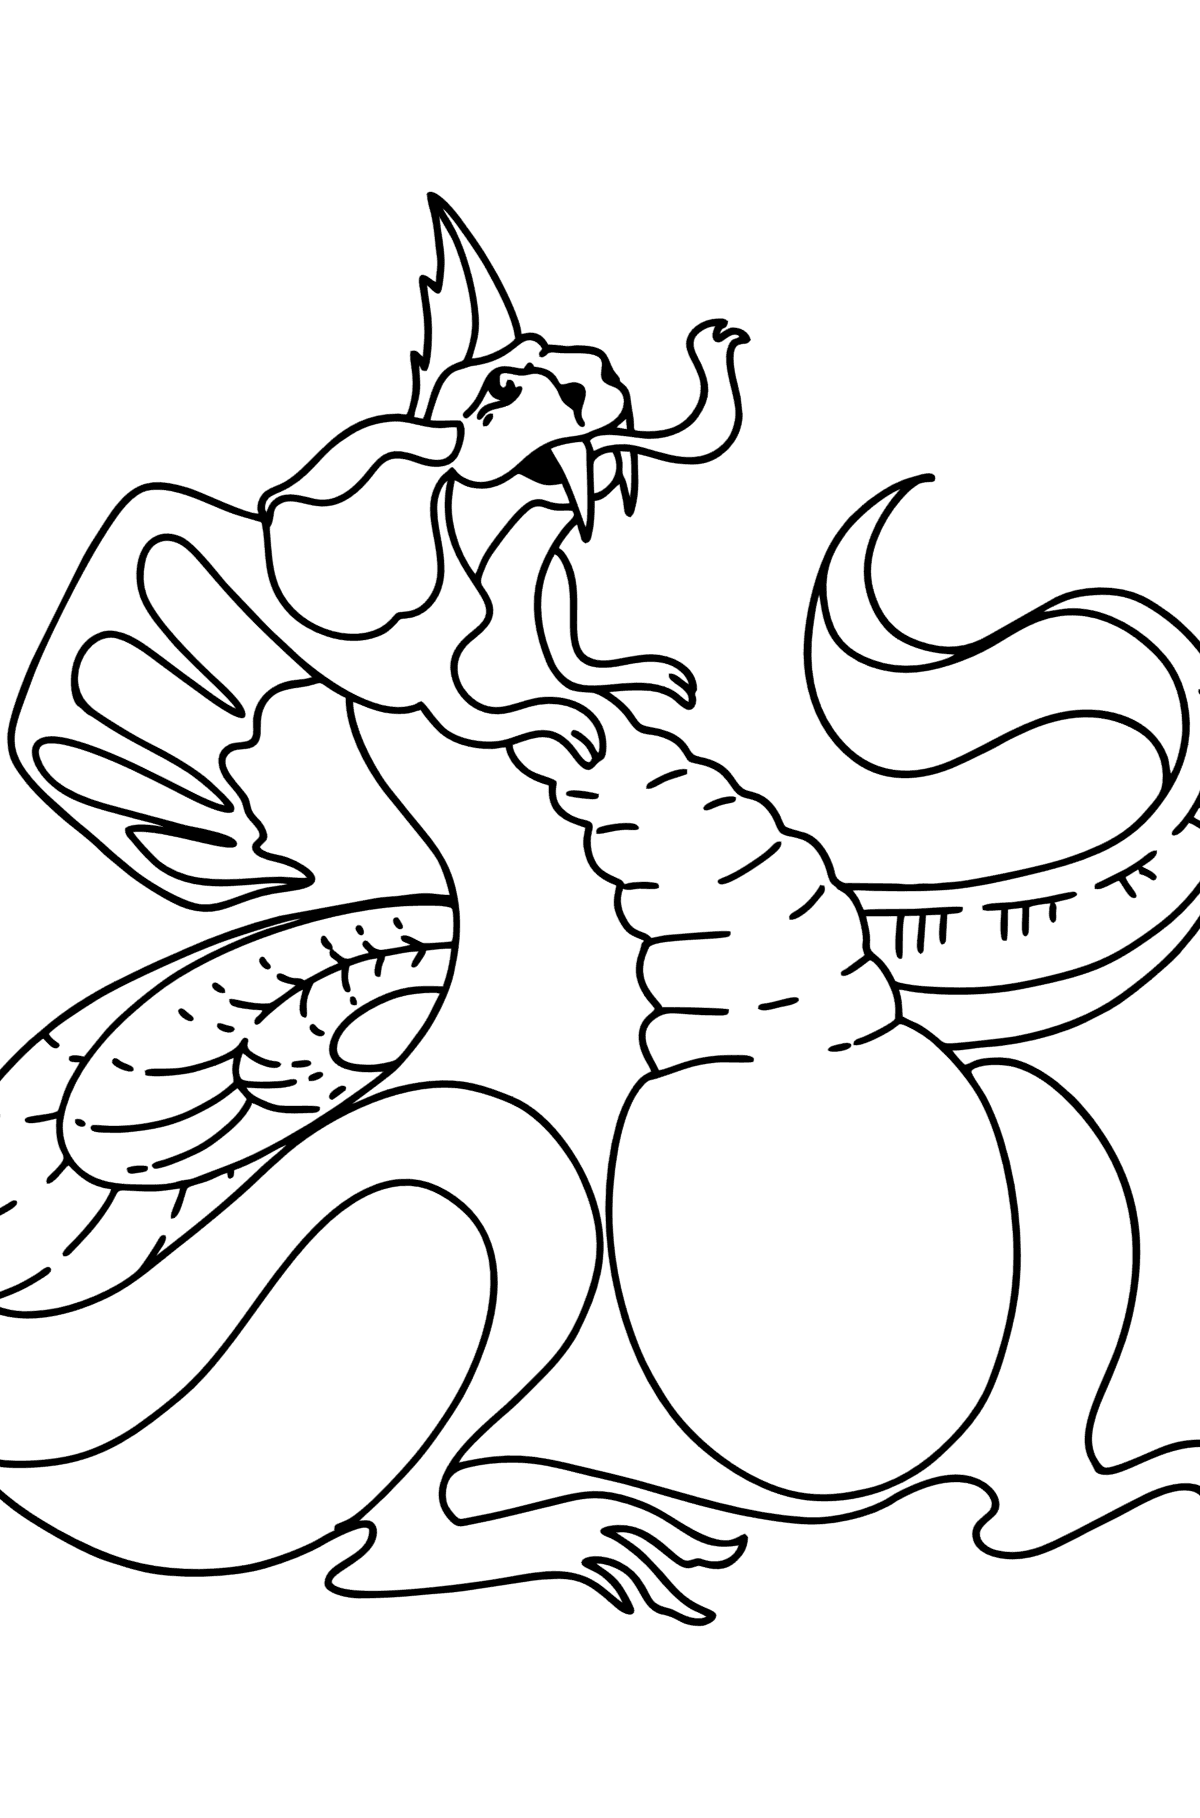 Desen de colorat dragonul obosit - Desene de colorat pentru copii